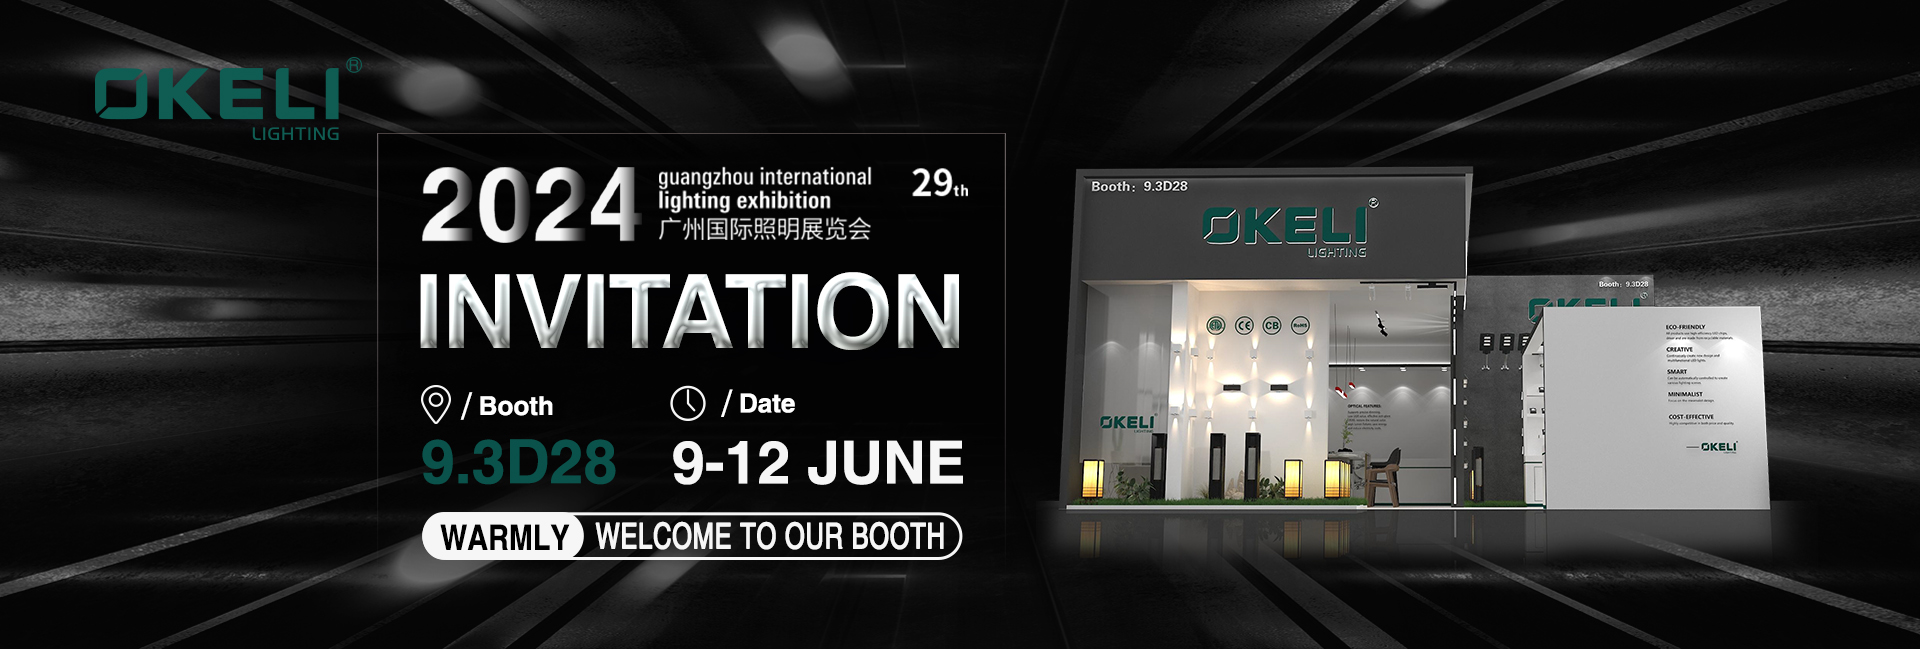 A 29ª Exposição Internacional de Iluminação de Guangzhou